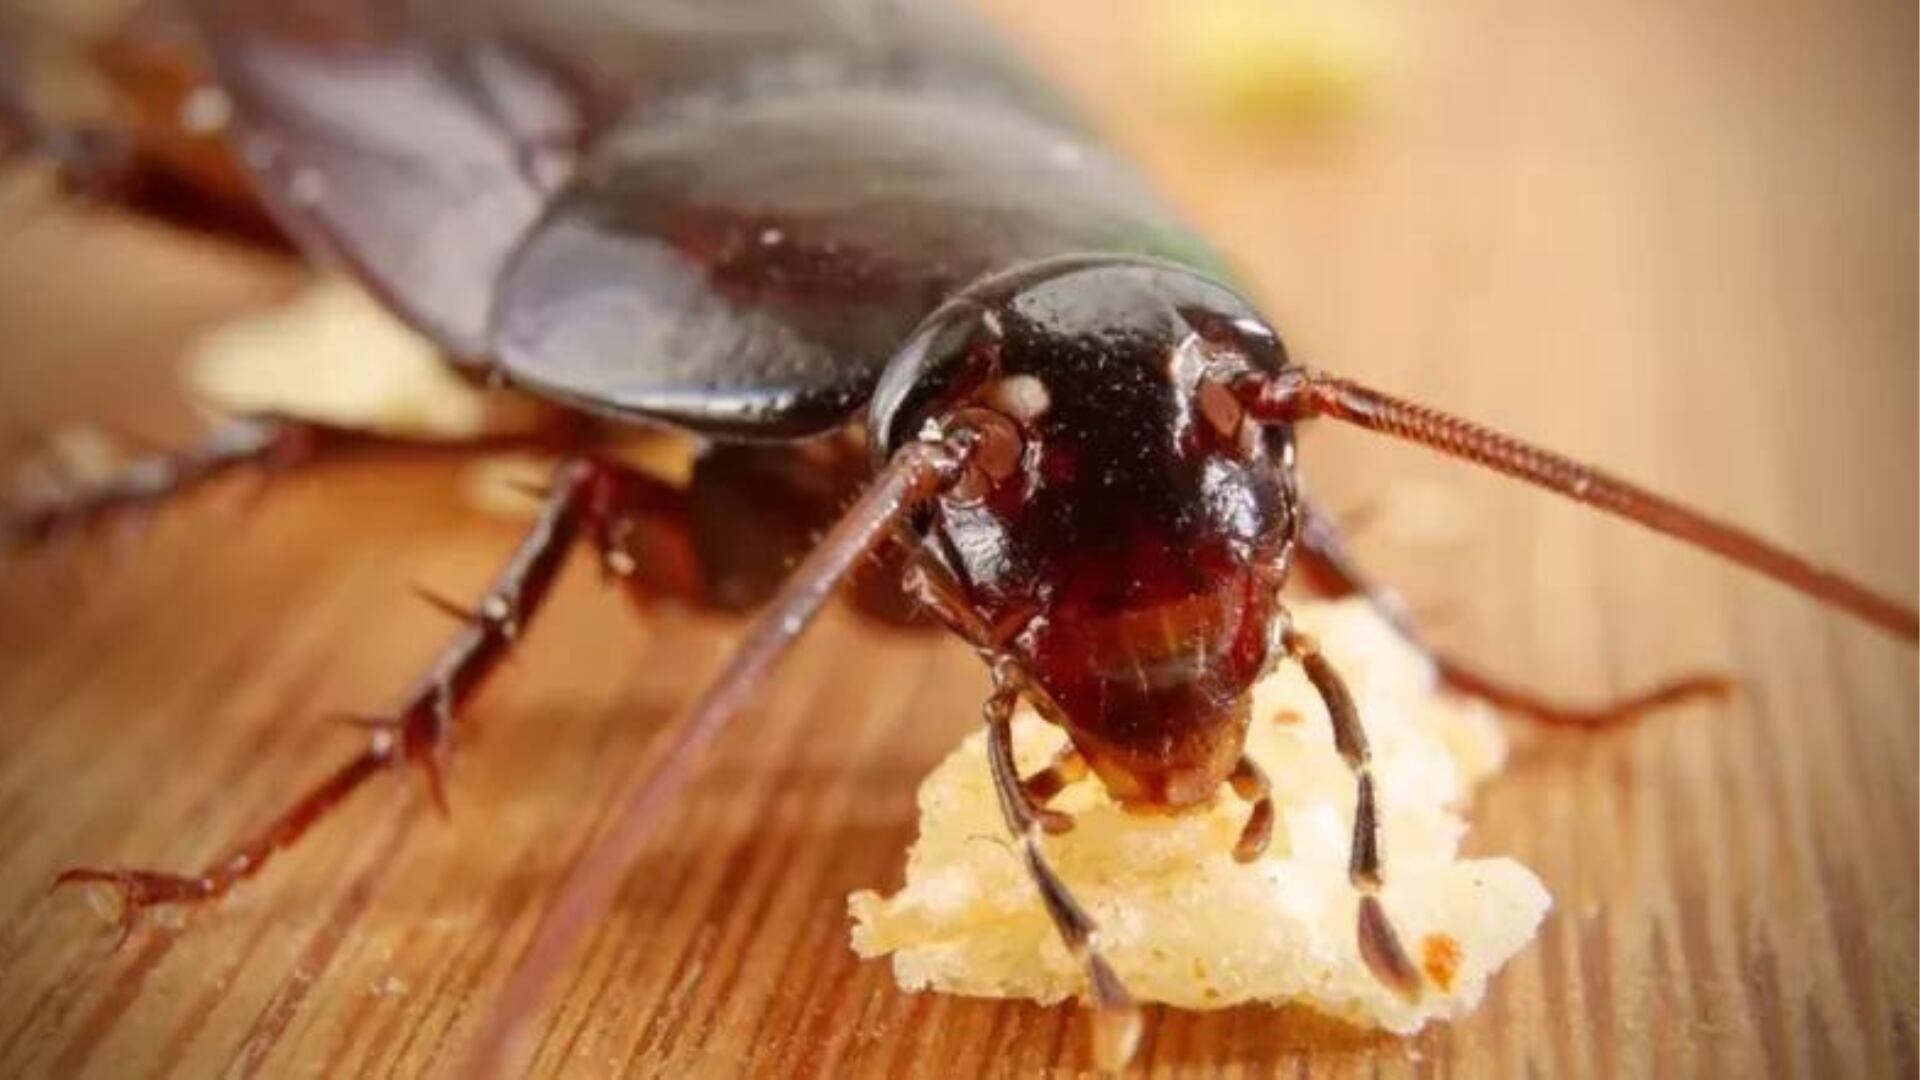 Las cucarachas pueden transmitir alrededor de 50 enfermedades patógenas. (Getty Images)